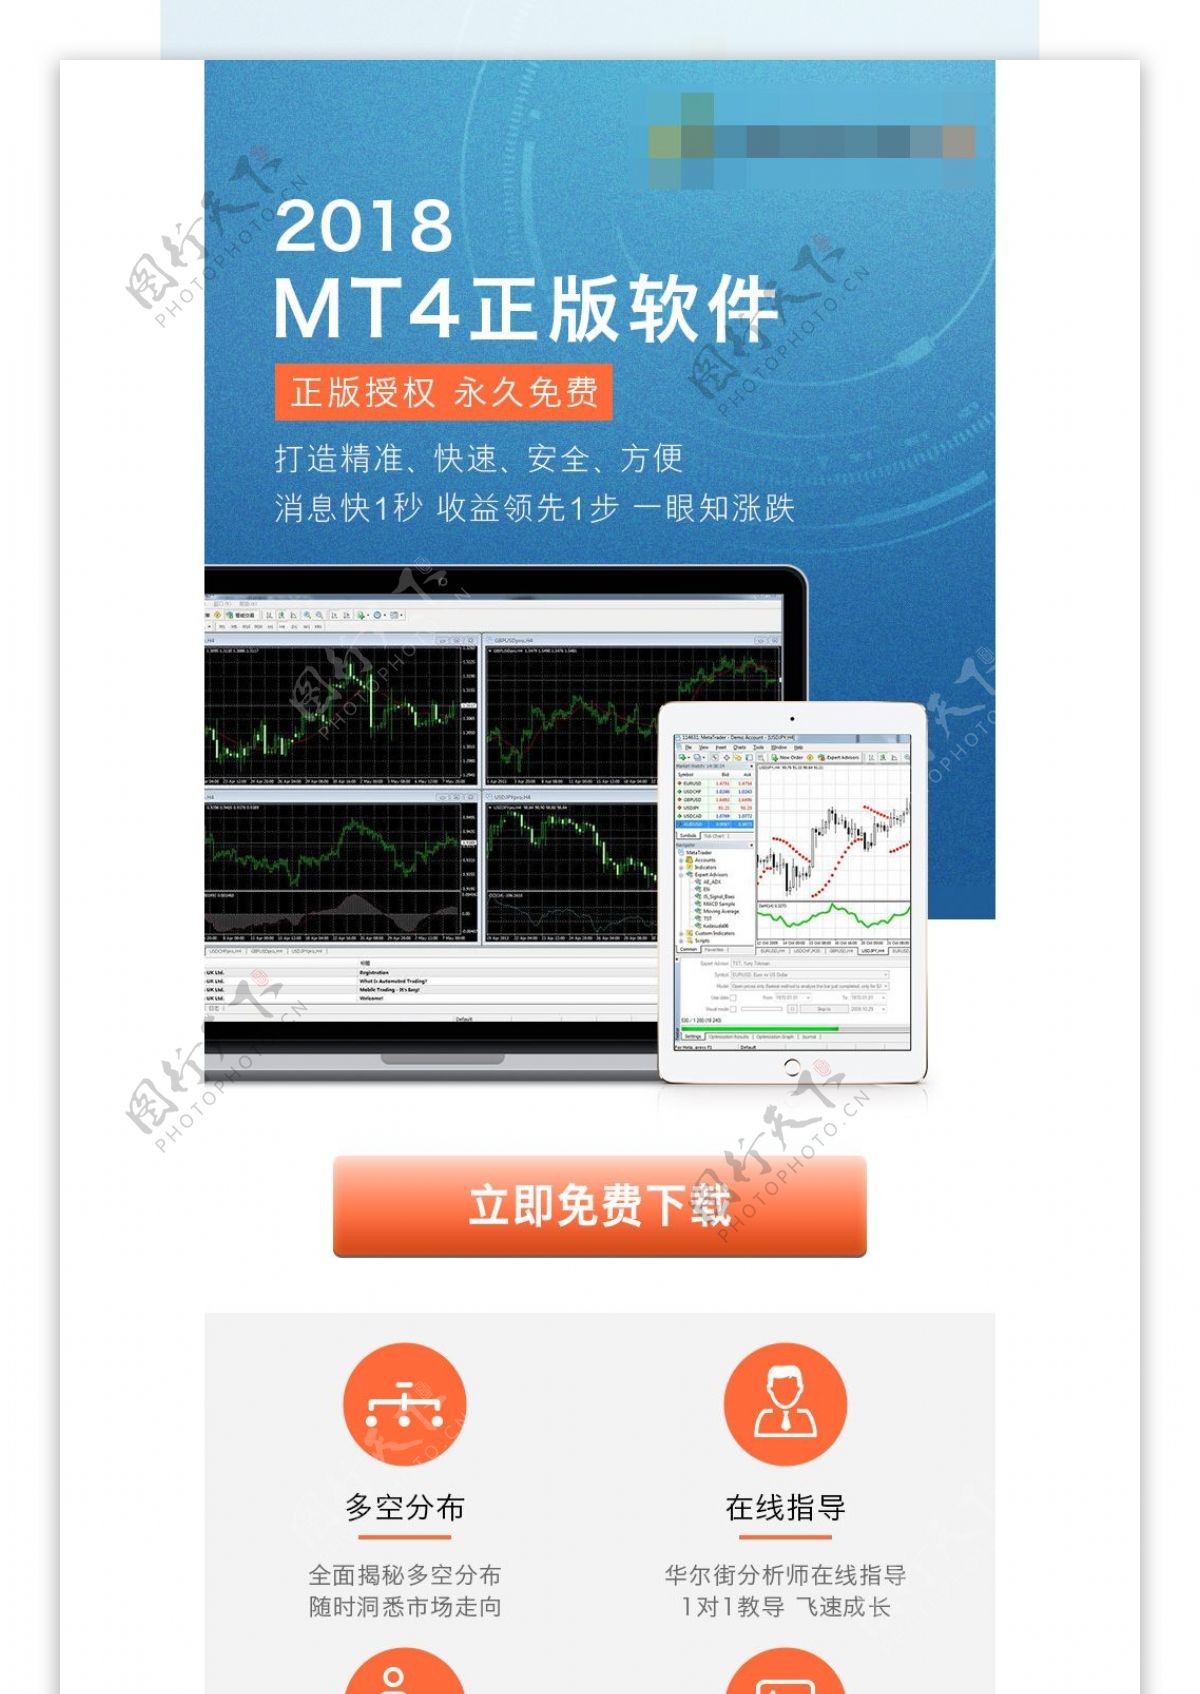 MT4软件下载页面